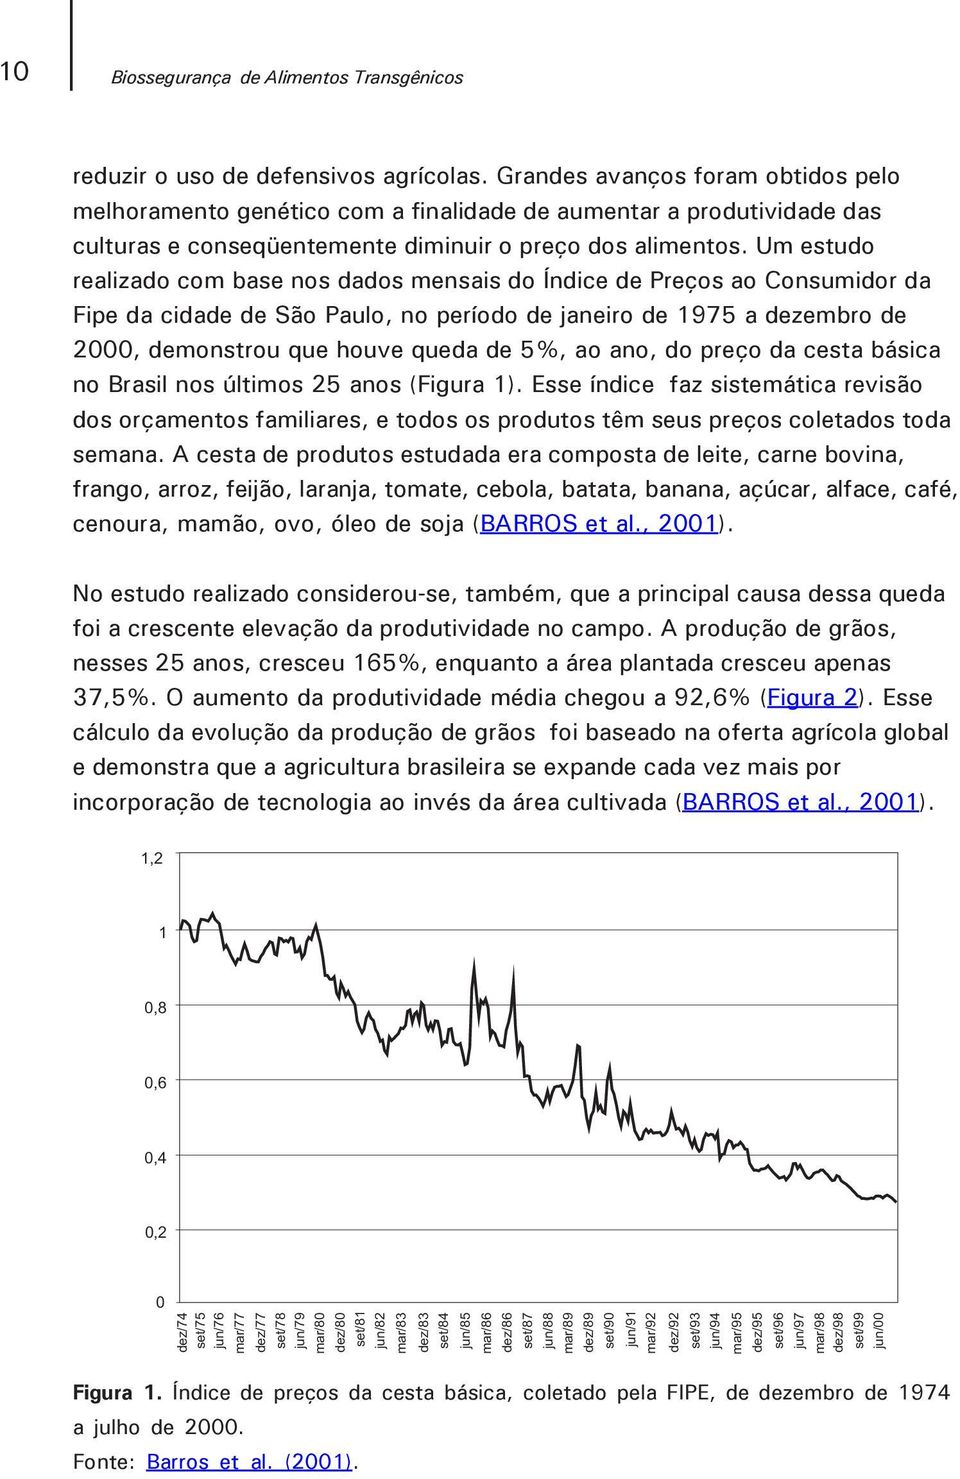 Um estudo realizado com base nos dados mensais do Índice de Preços ao Consumidor da Fipe da cidade de São Paulo, no período de janeiro de 1975 a dezembro de 2000, demonstrou que houve queda de 5%, ao